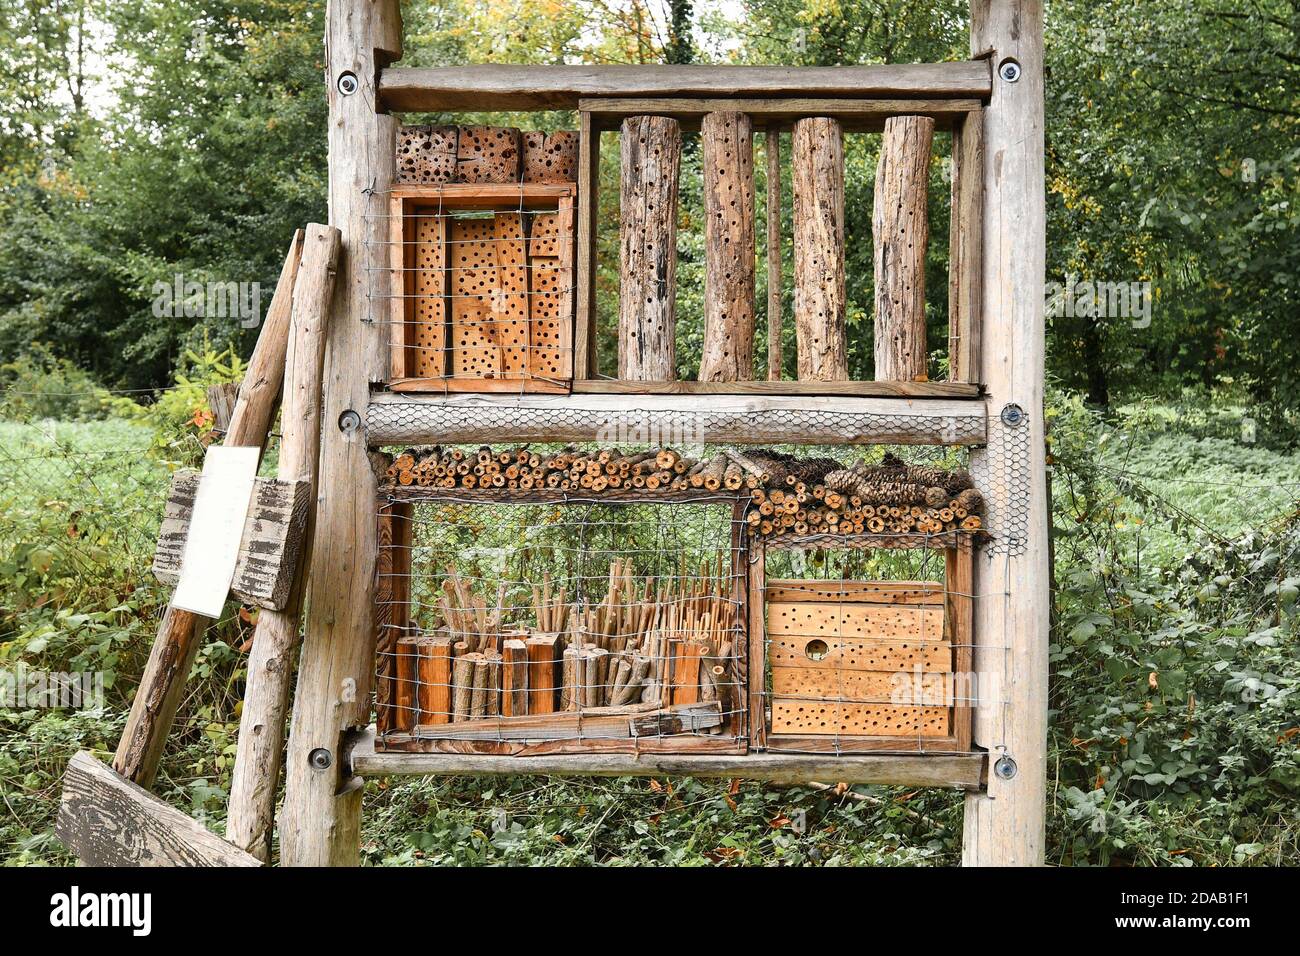 Hôtel de la maison des insectes en bois naturel créé fournir un abri aux insectes pour empêcher leur extinction Banque D'Images